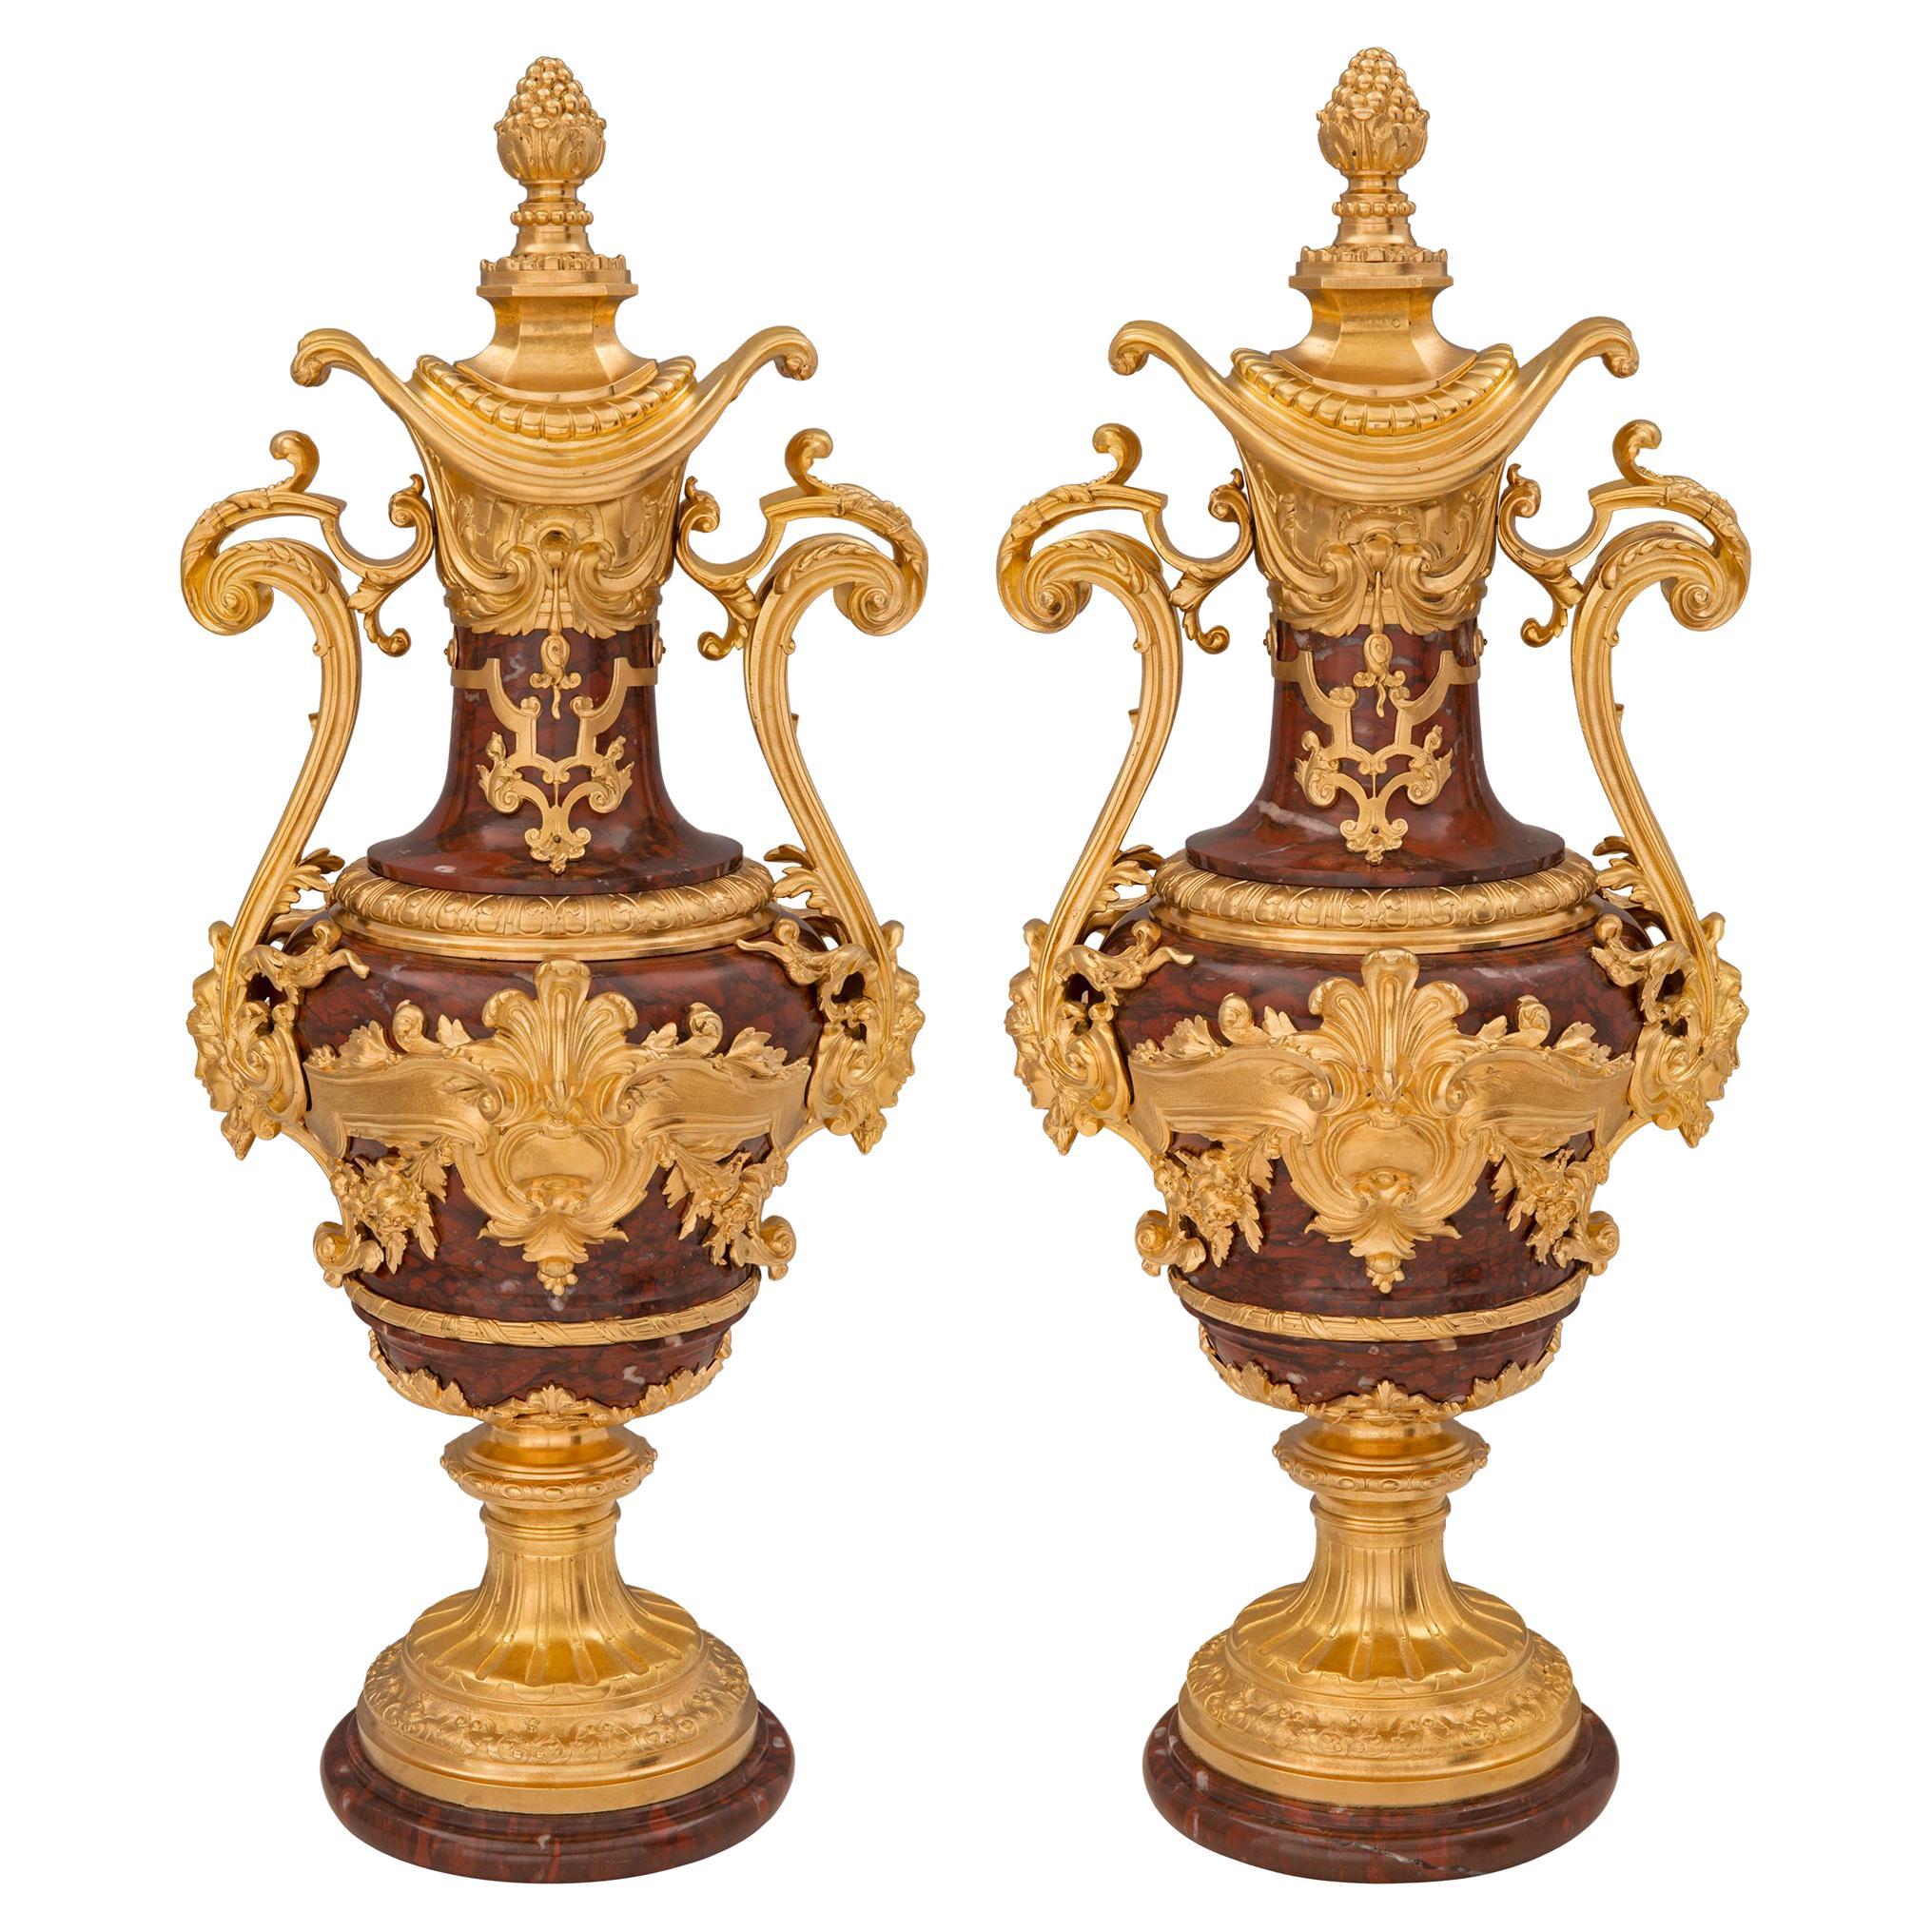 Paar französische Urnen aus der St. Belle Époque-Periode des 19. Jahrhunderts, Louis XVI